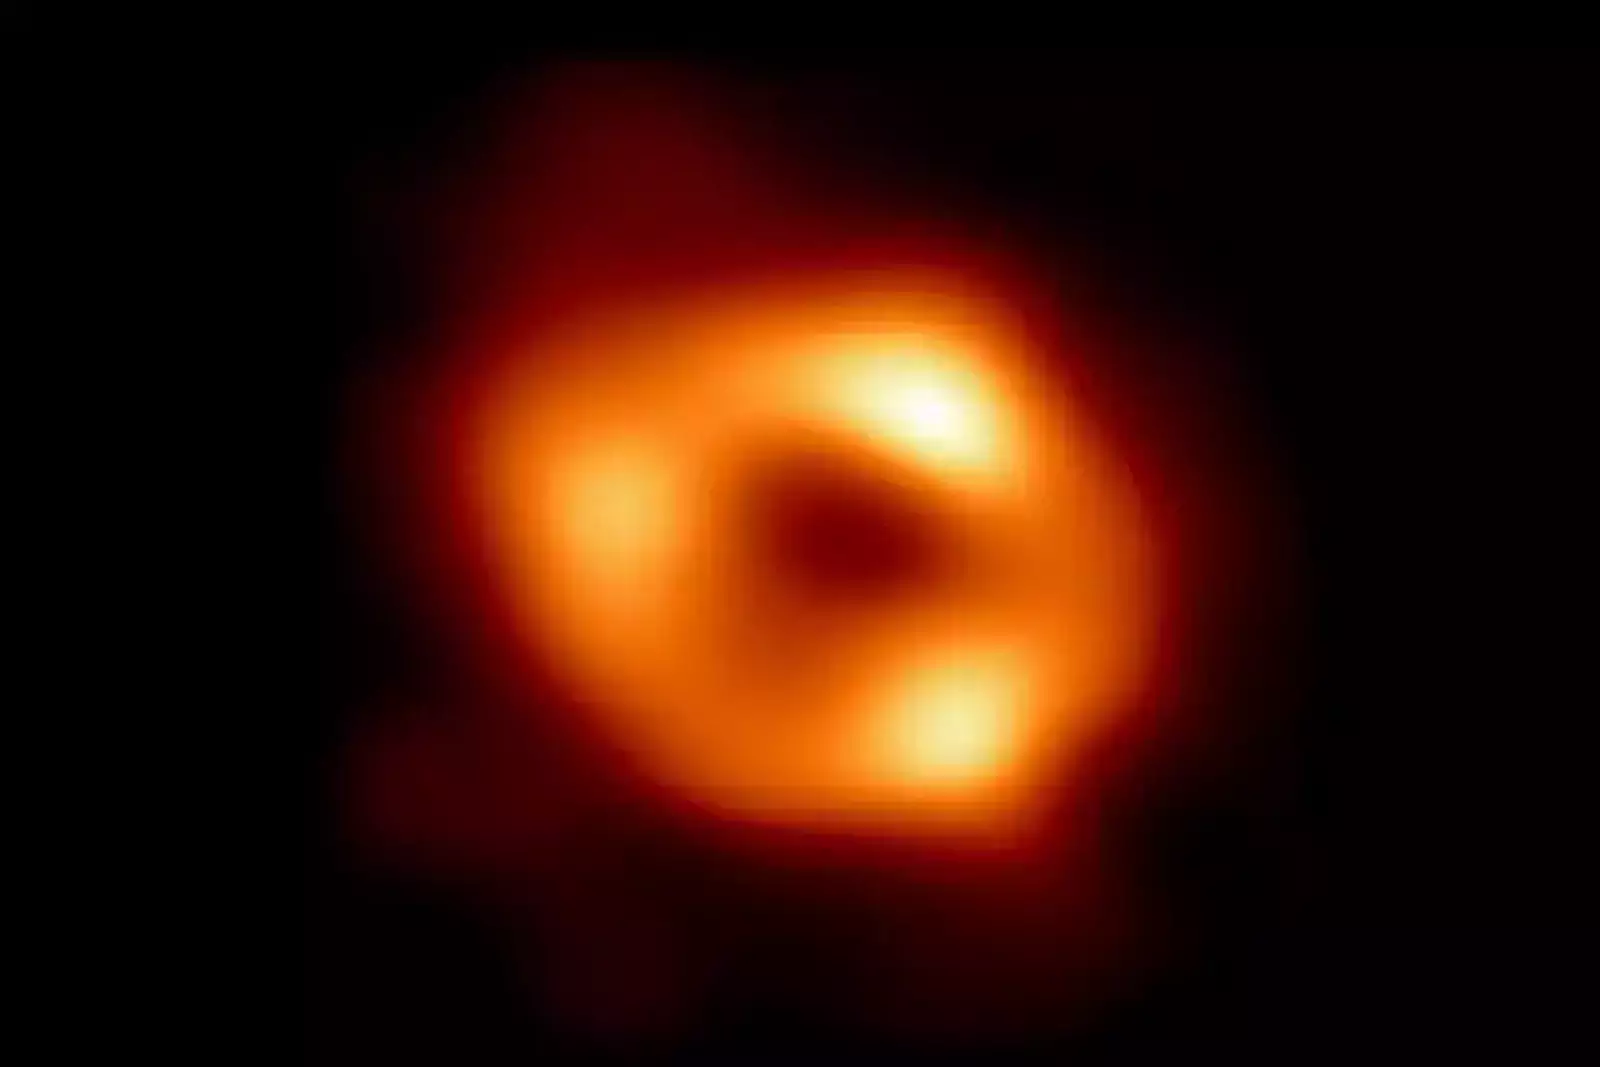 Снимок черной дыры Стрелец А*.